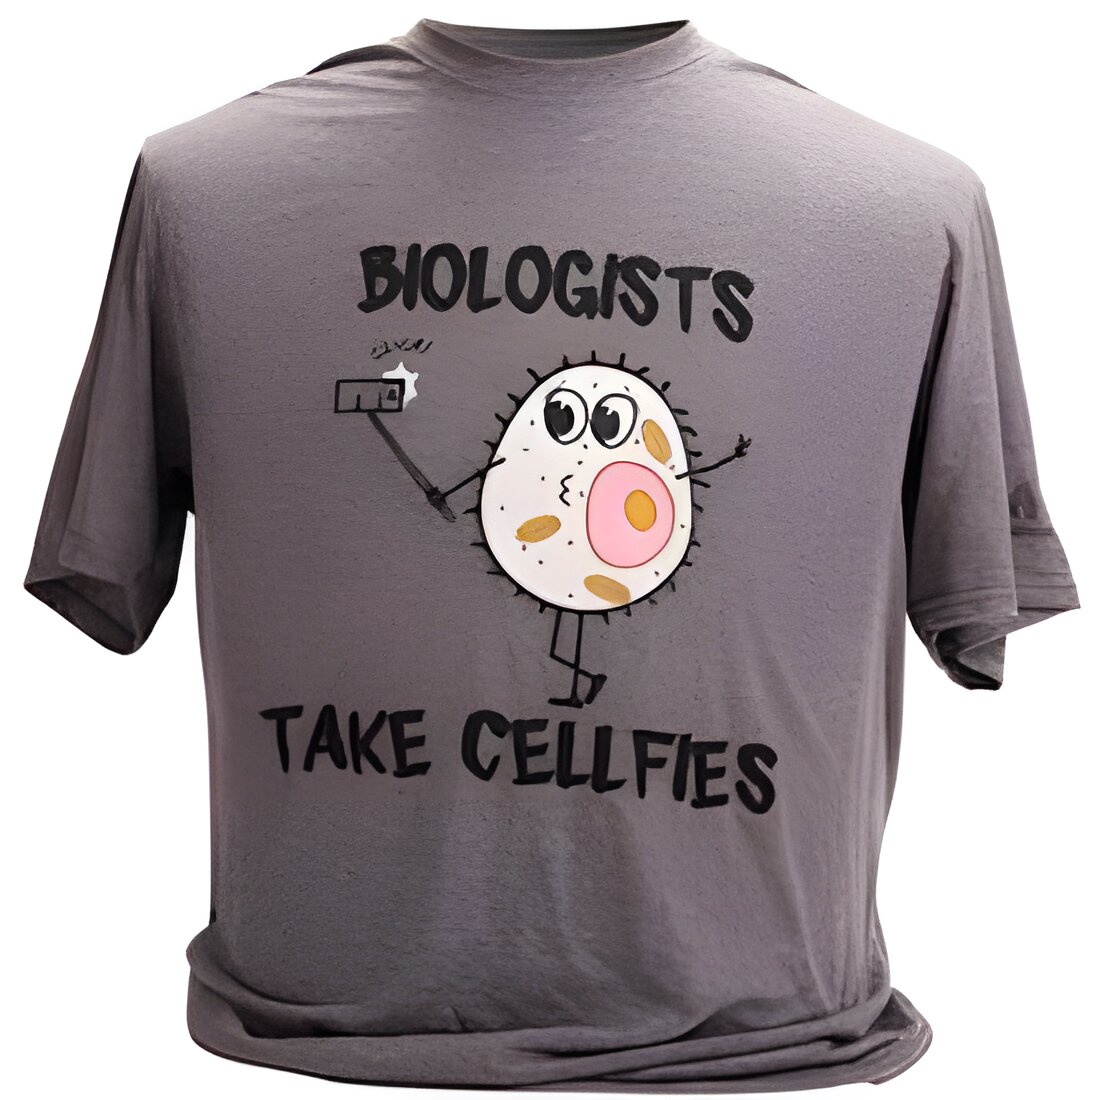 Free Cellfie T-Shirt